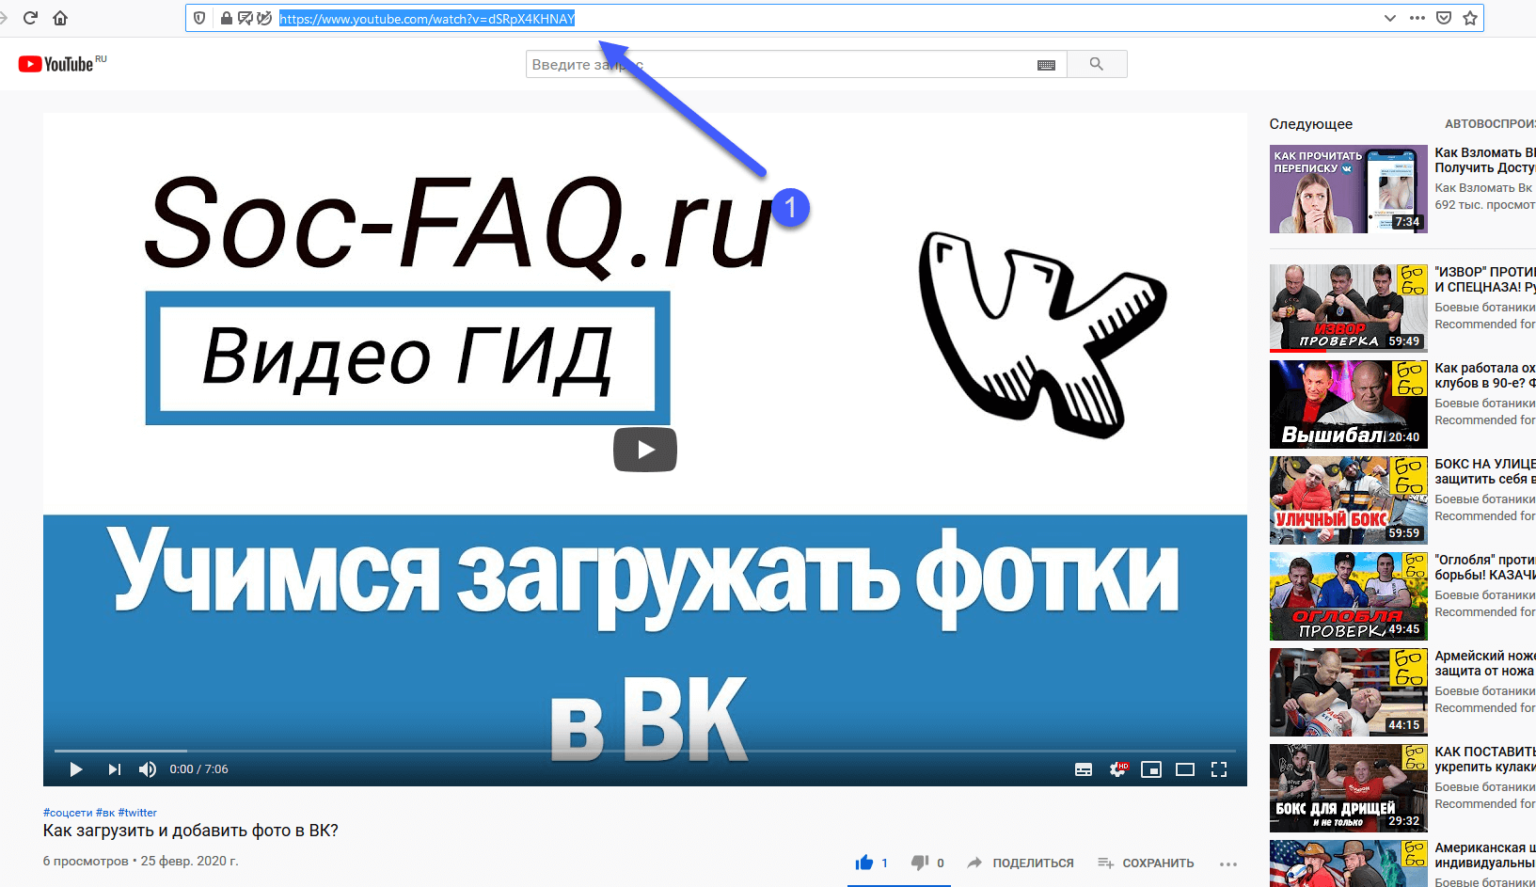 Как загрузить видео на сайт ucoz со своего компьютера